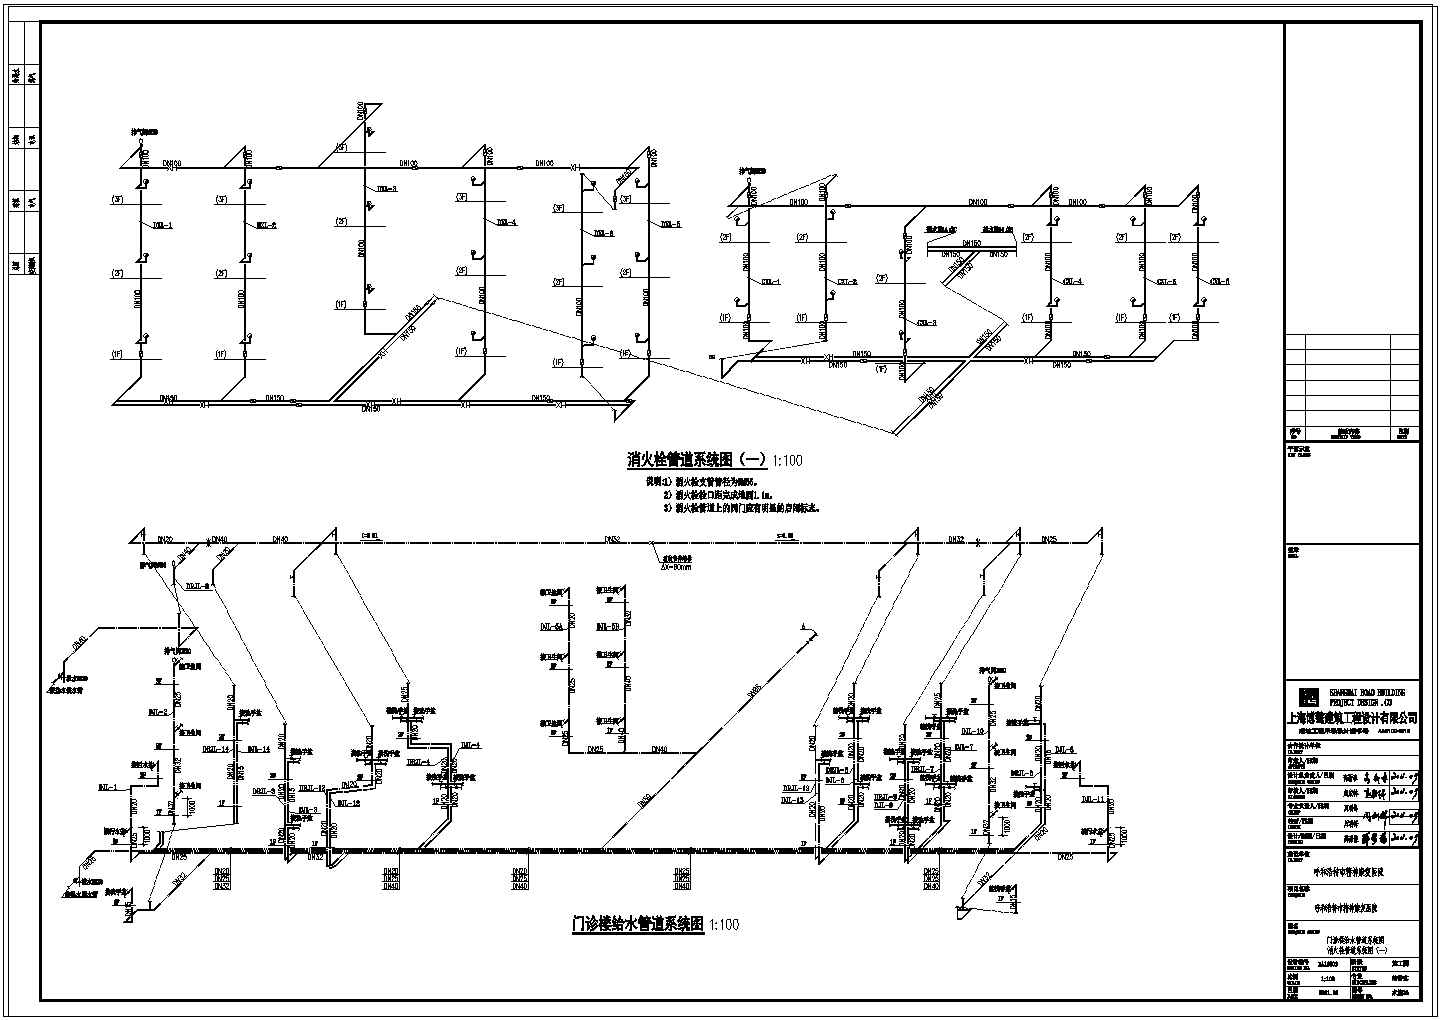 36-门诊楼给水管道系统图 消火栓管道系统图（一）